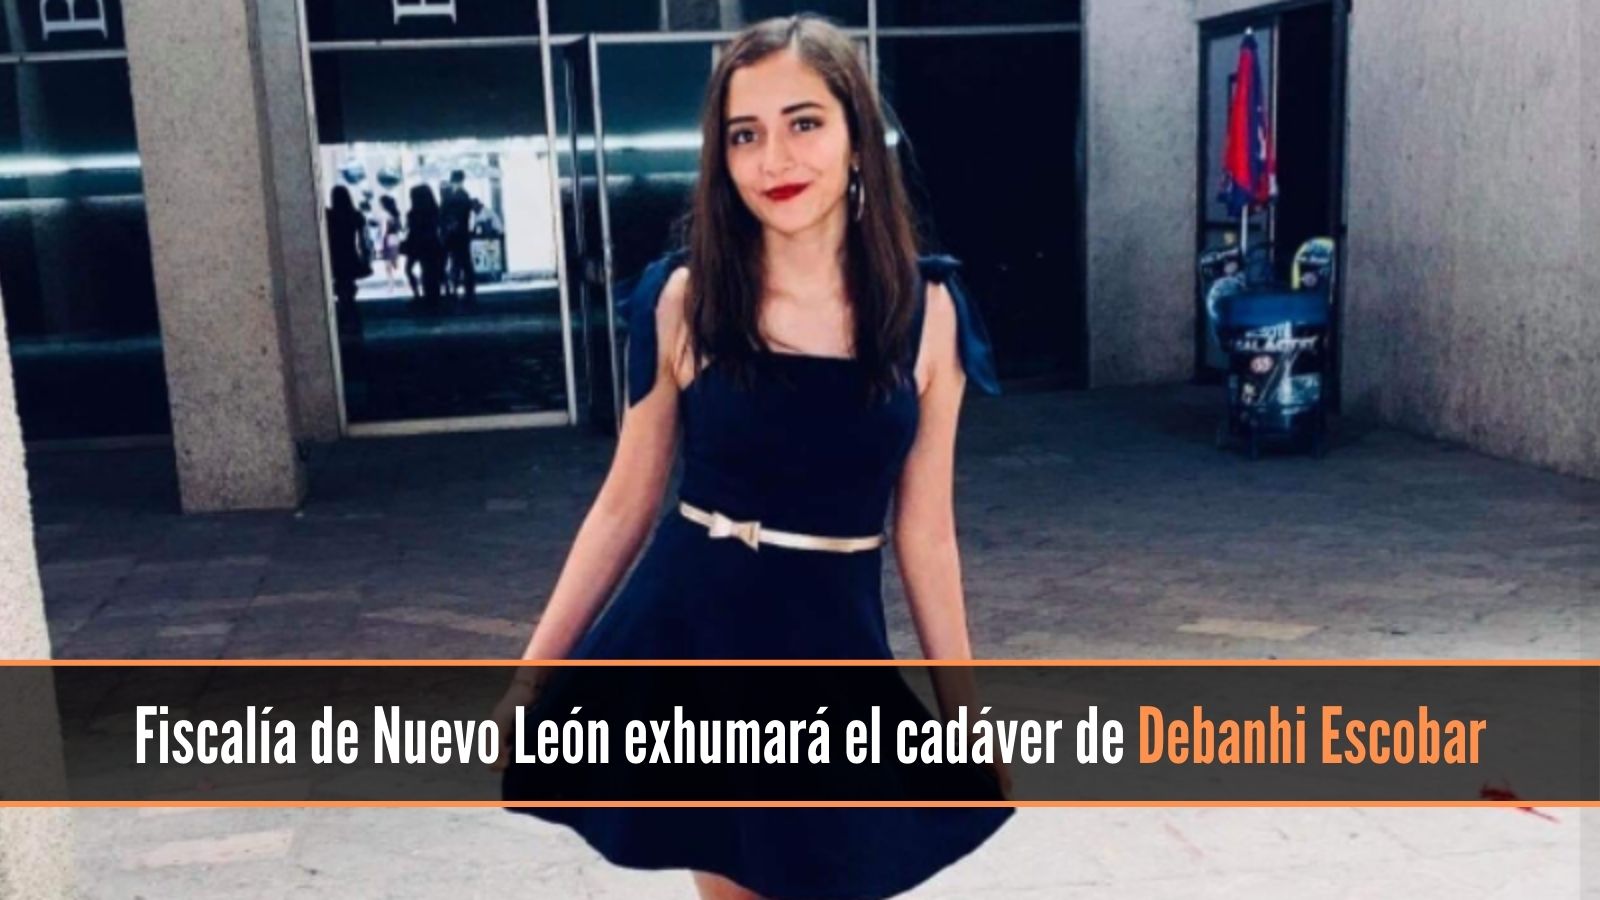 Fiscalía de Nuevo León exhumará hoy cadaver de Debanhi Escobar